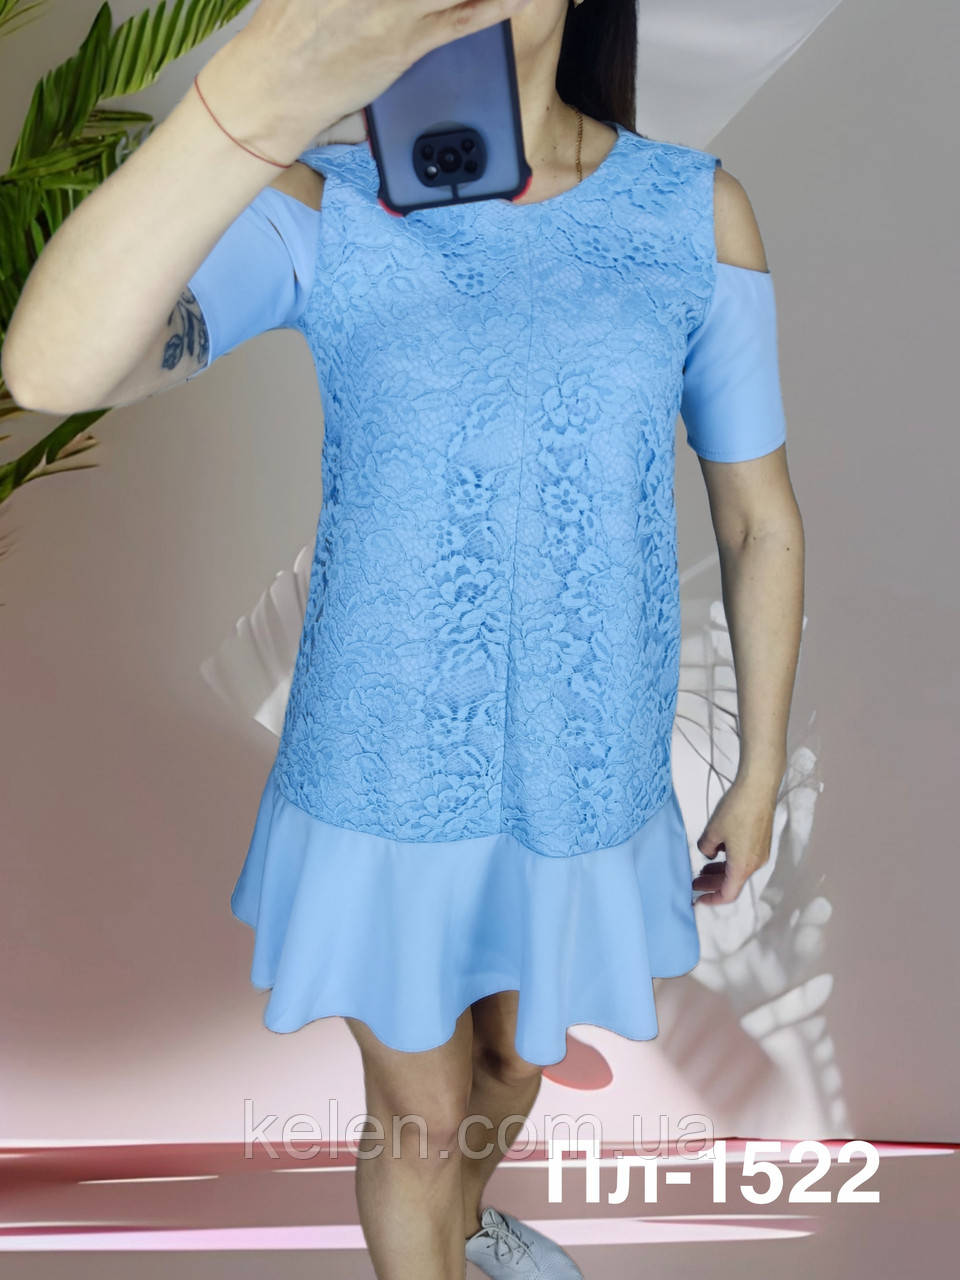 Плаття  коктельнев блакитному кольорі з гіпюром розмір S (укр 42-44)